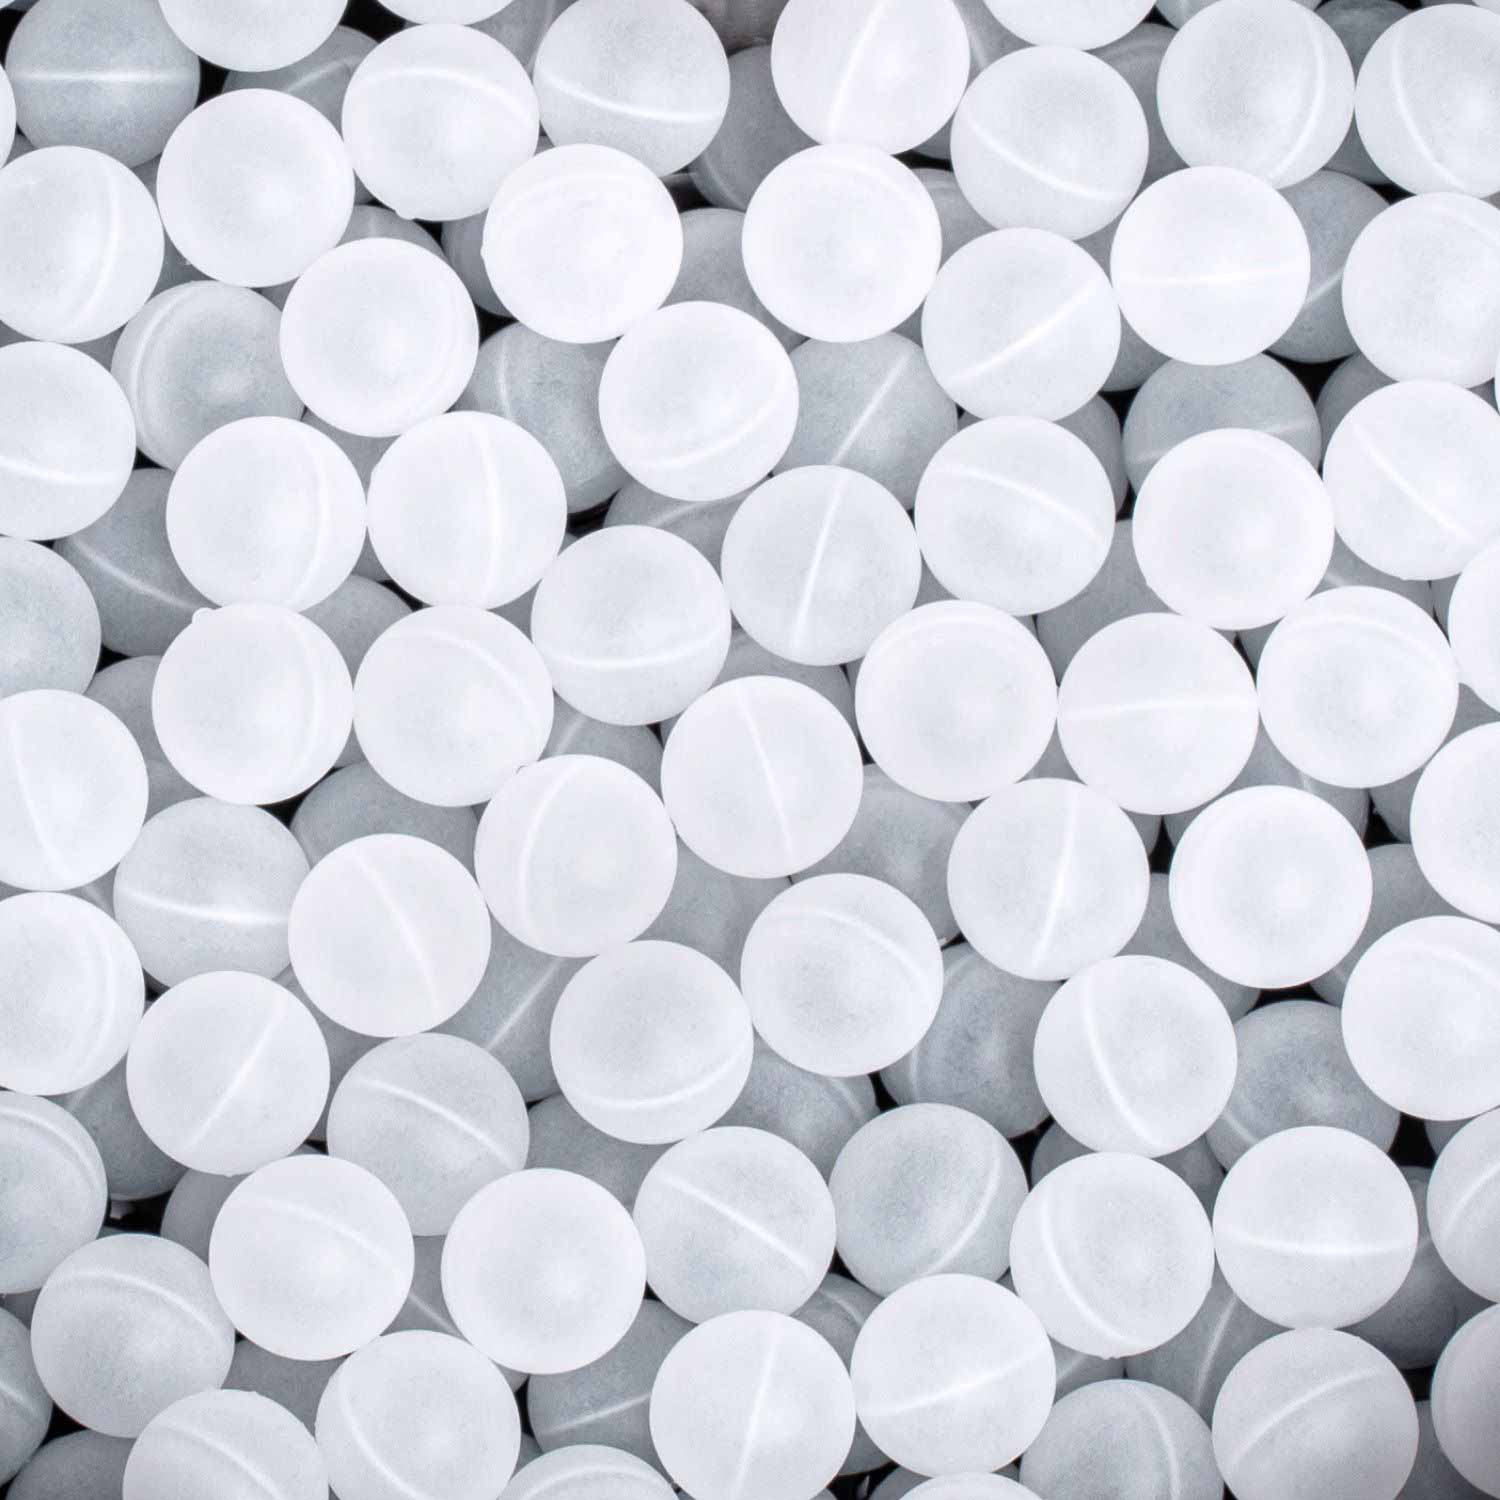 White plastic insulation balls